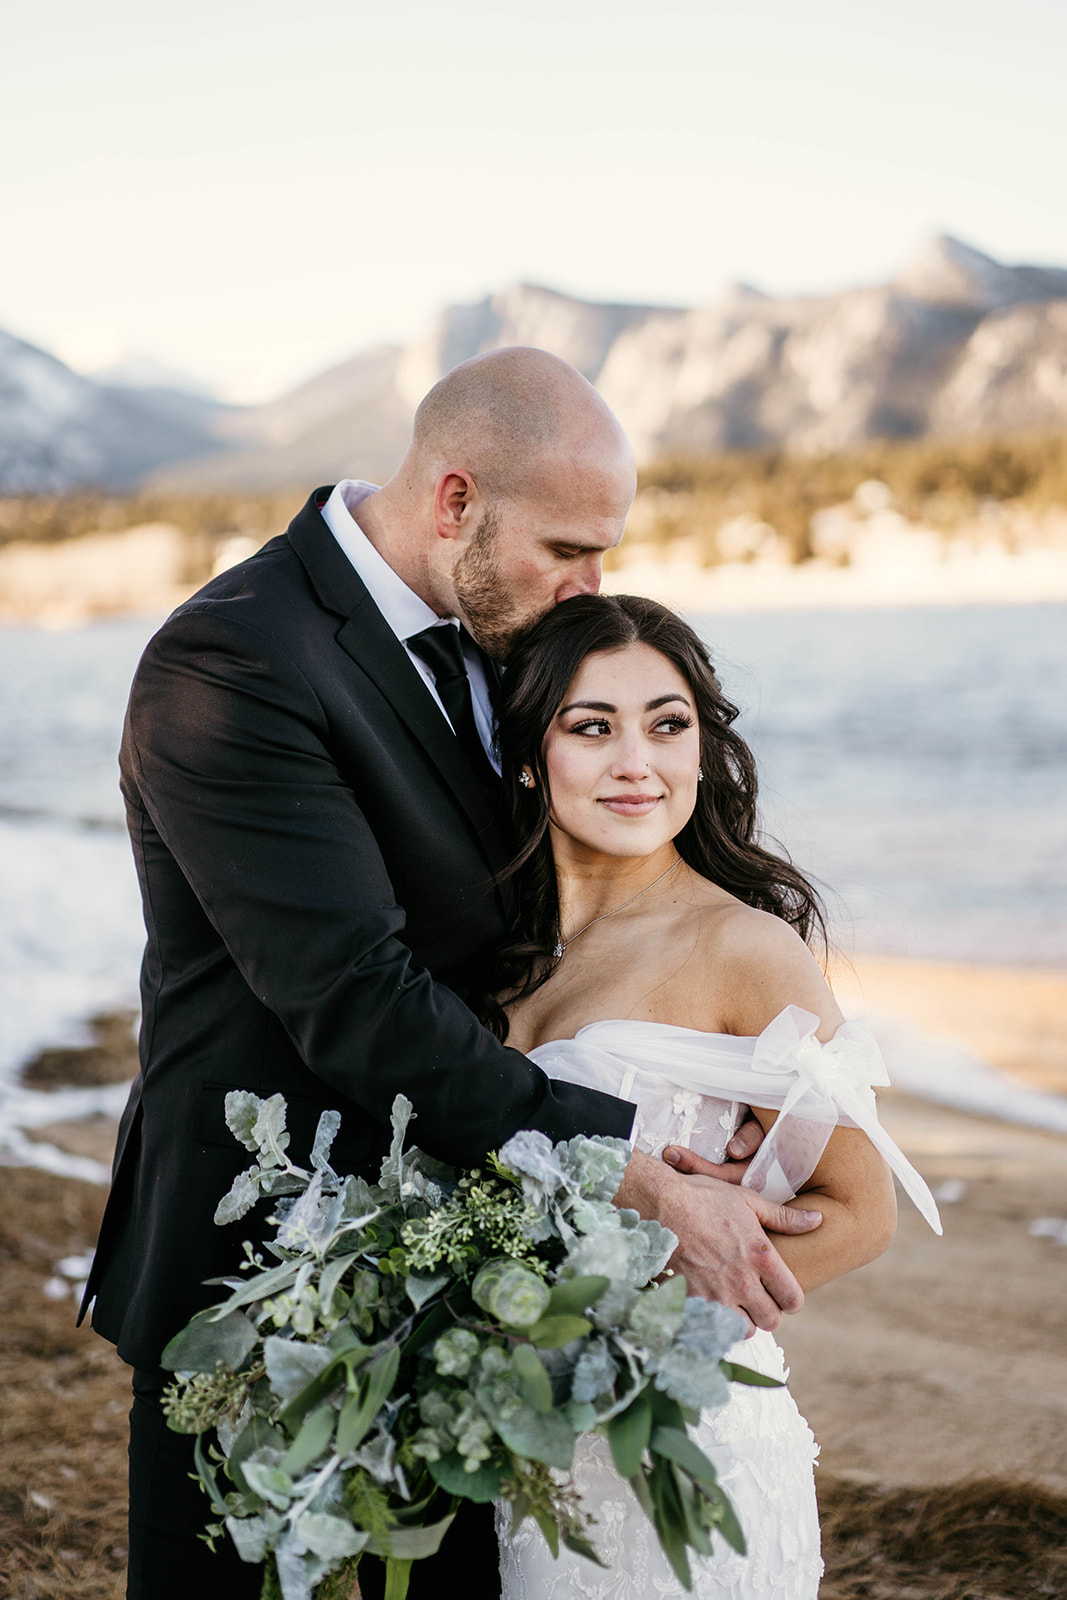 Intimate couples photos at winter mountain wedding at Black Canyon Inn in Estes Park, Colorado